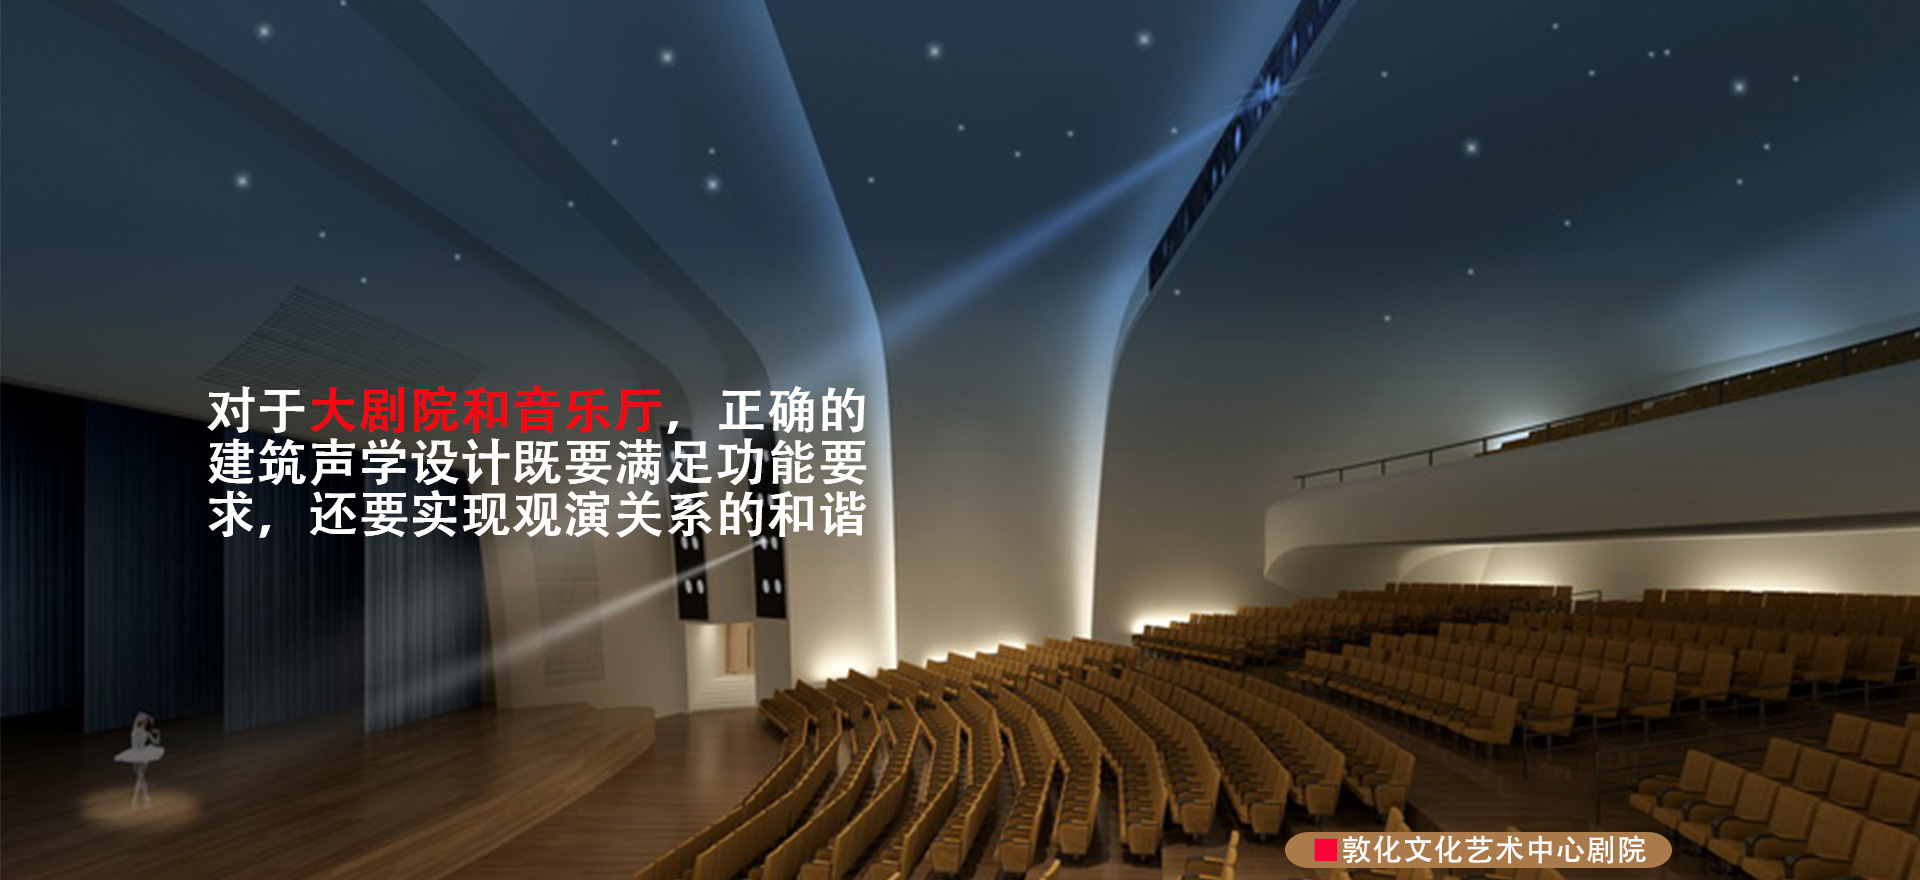 敦化文化中心劇院